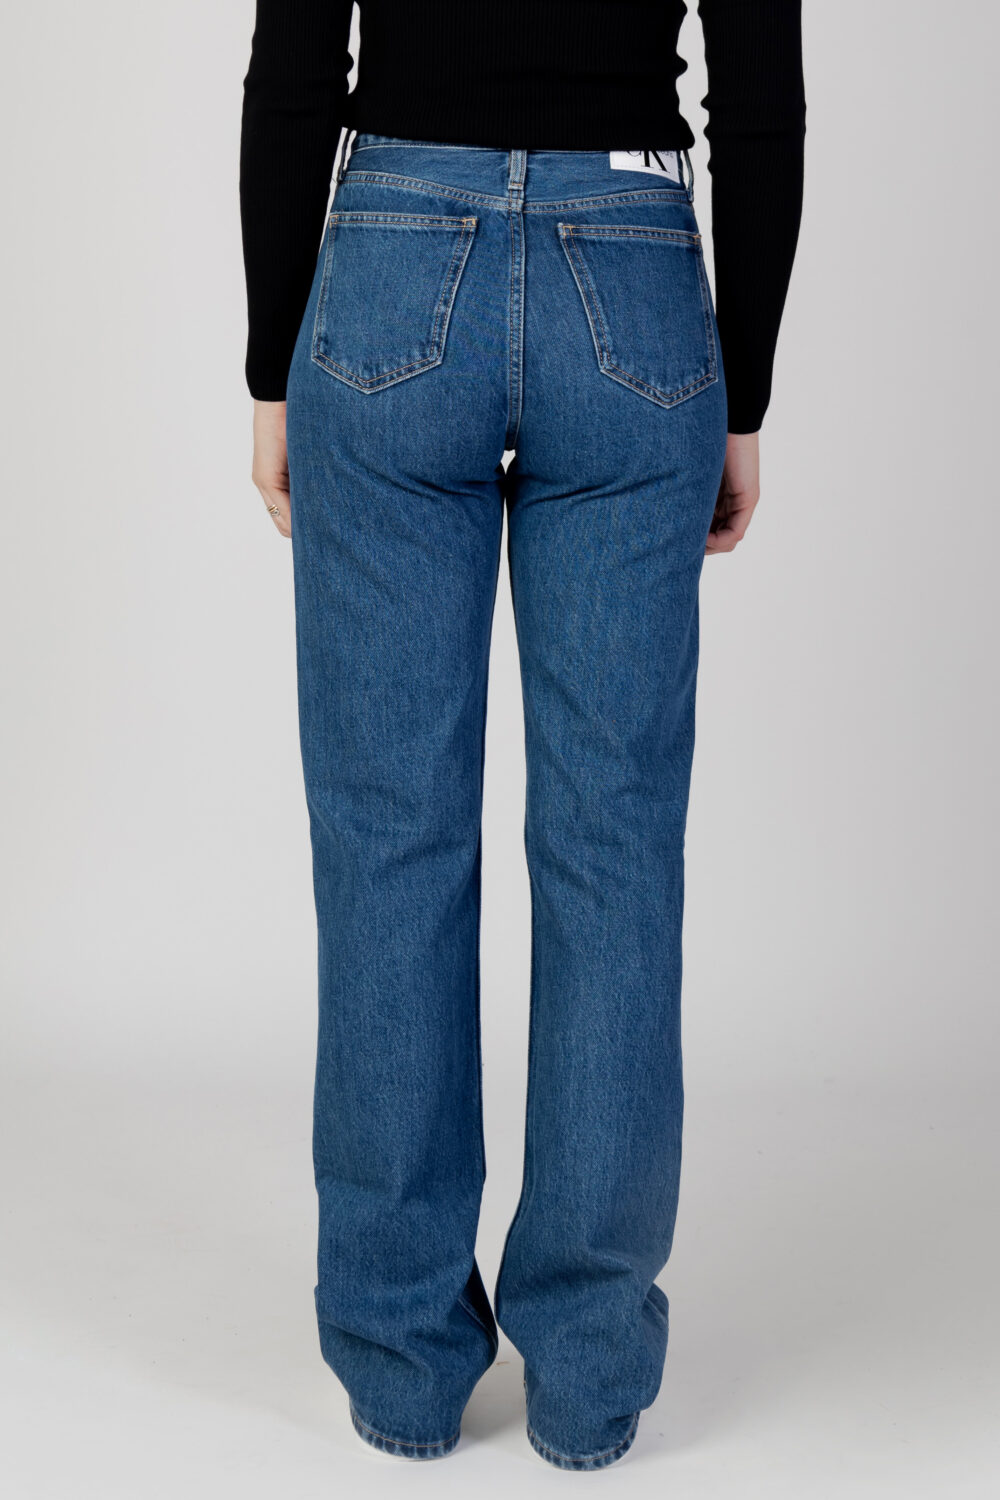 Jeans bootcut Calvin Klein Jeans authentic bootcut Denim - Foto 3